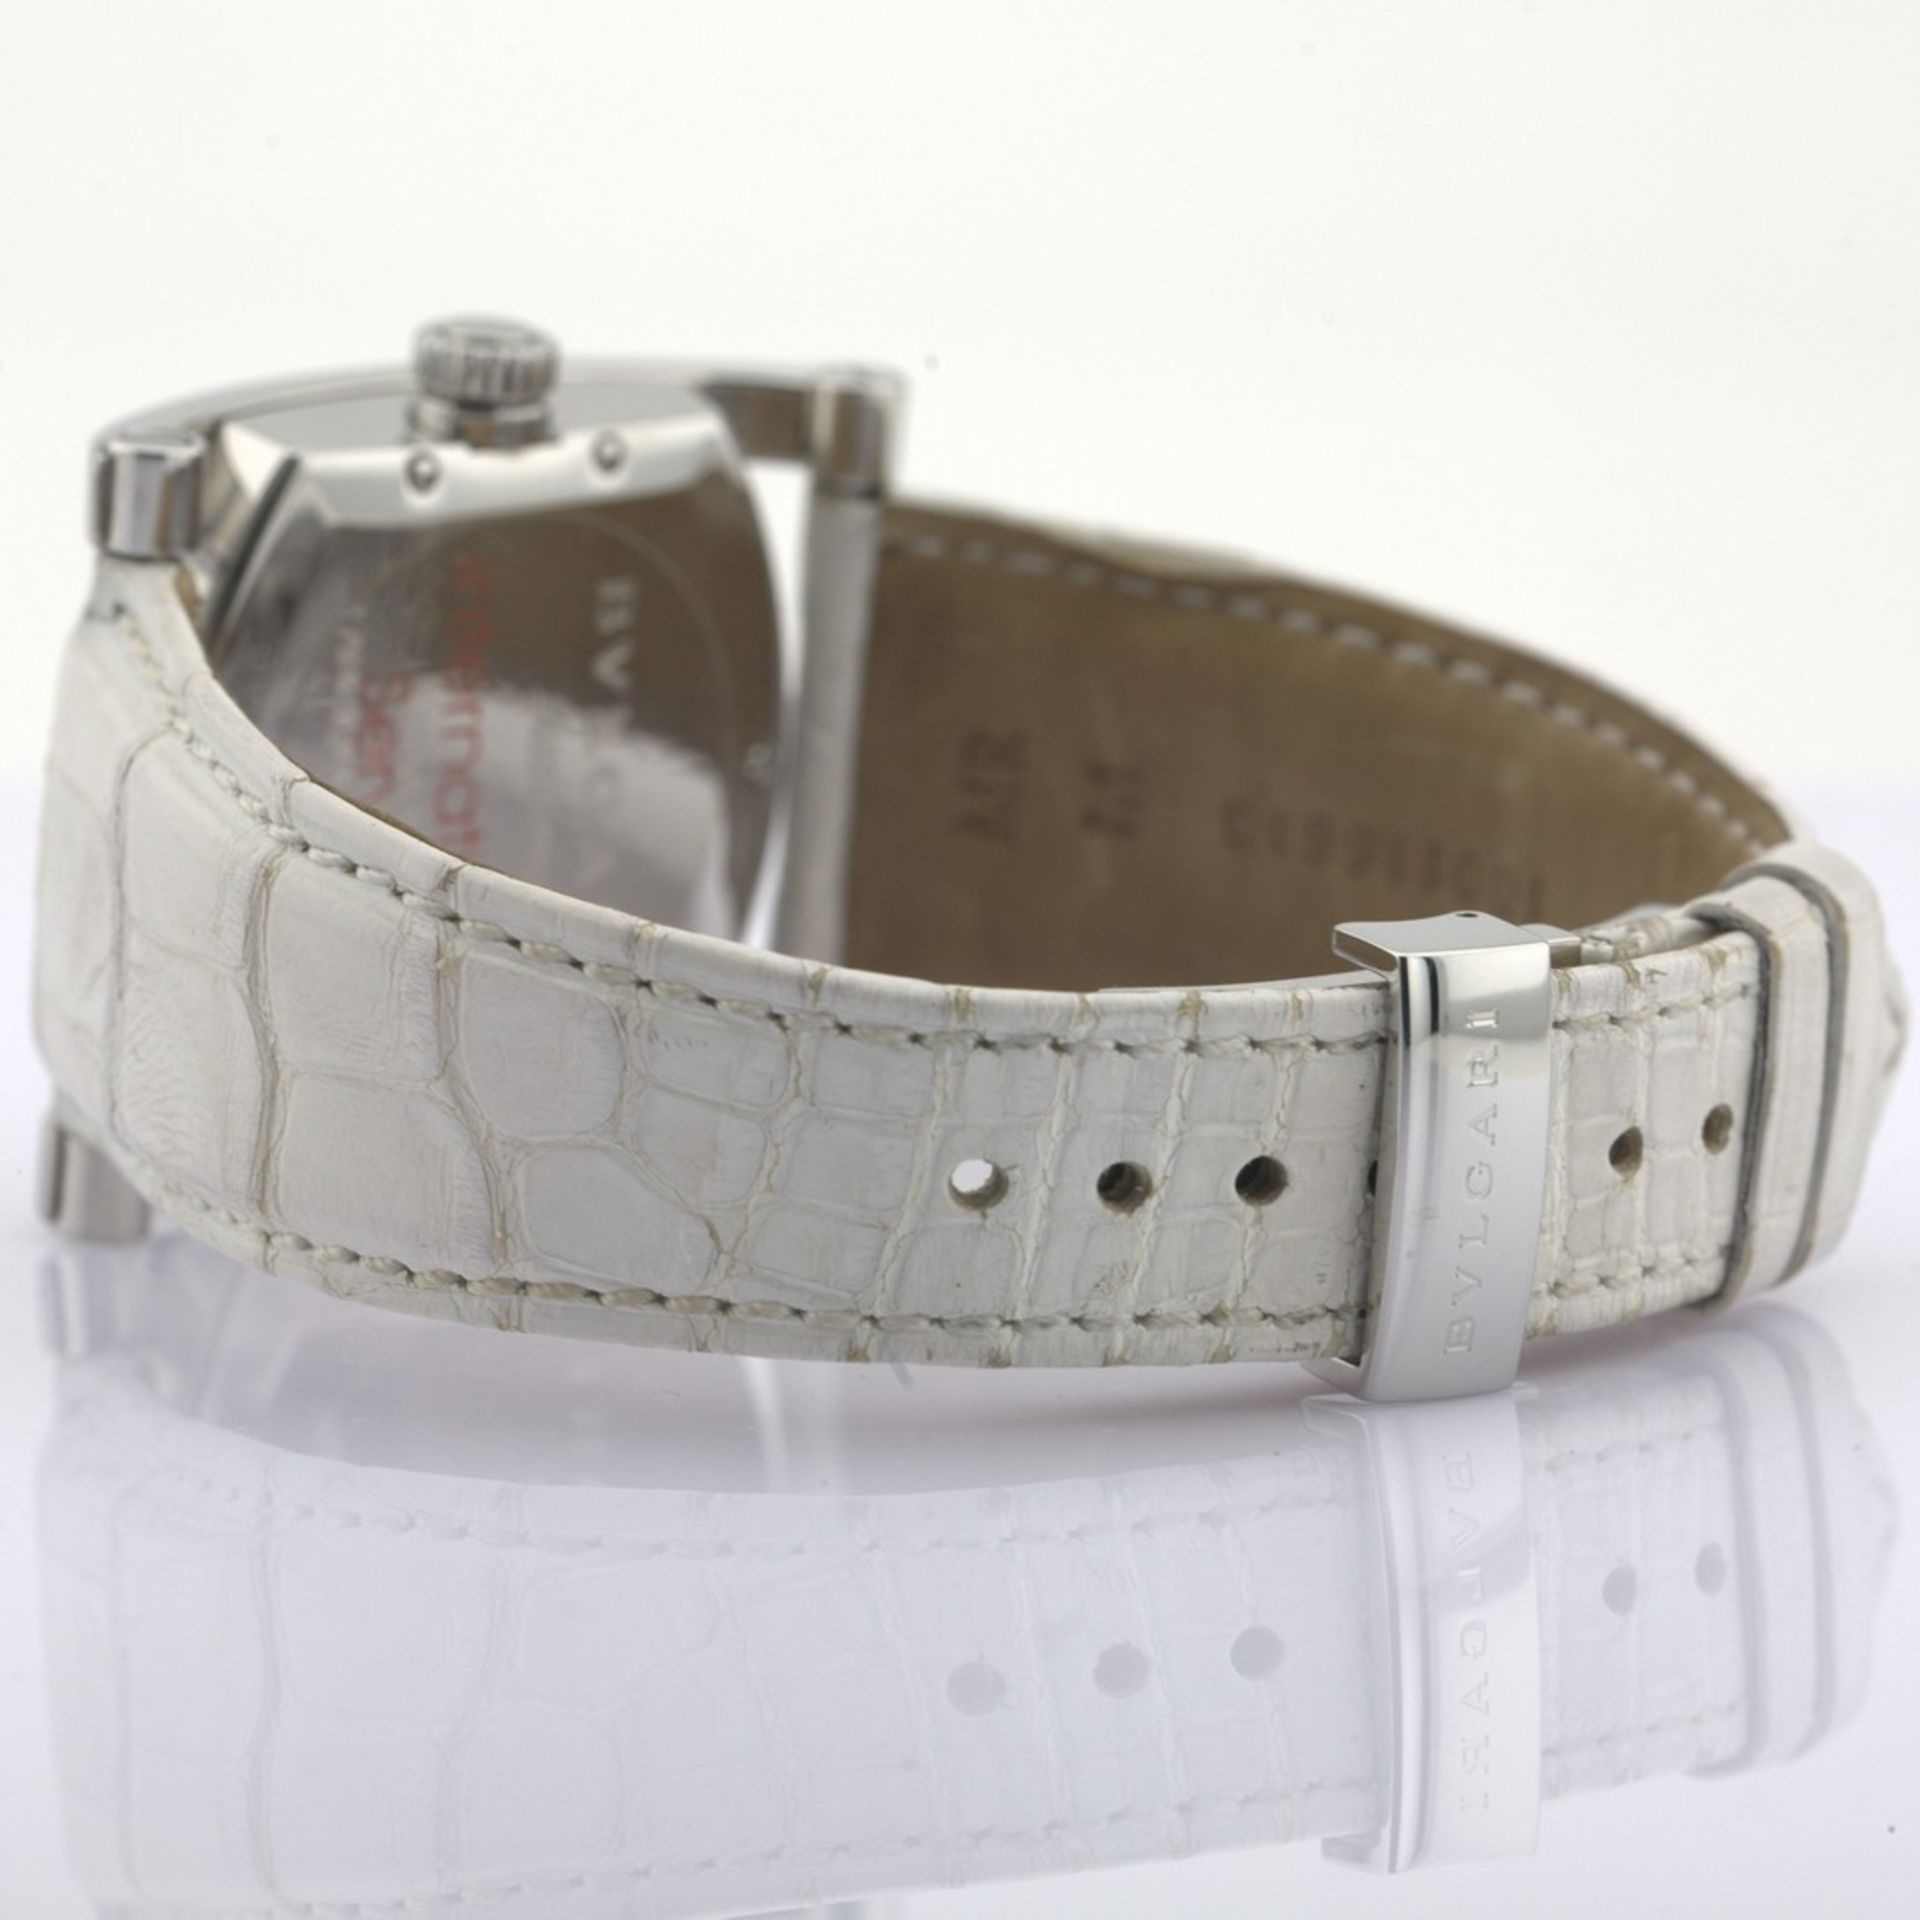 Bvlgari / AA44S Diamond Mother of Pearl Dial - Gentlemen's Steel Wristwatch - Image 10 of 11